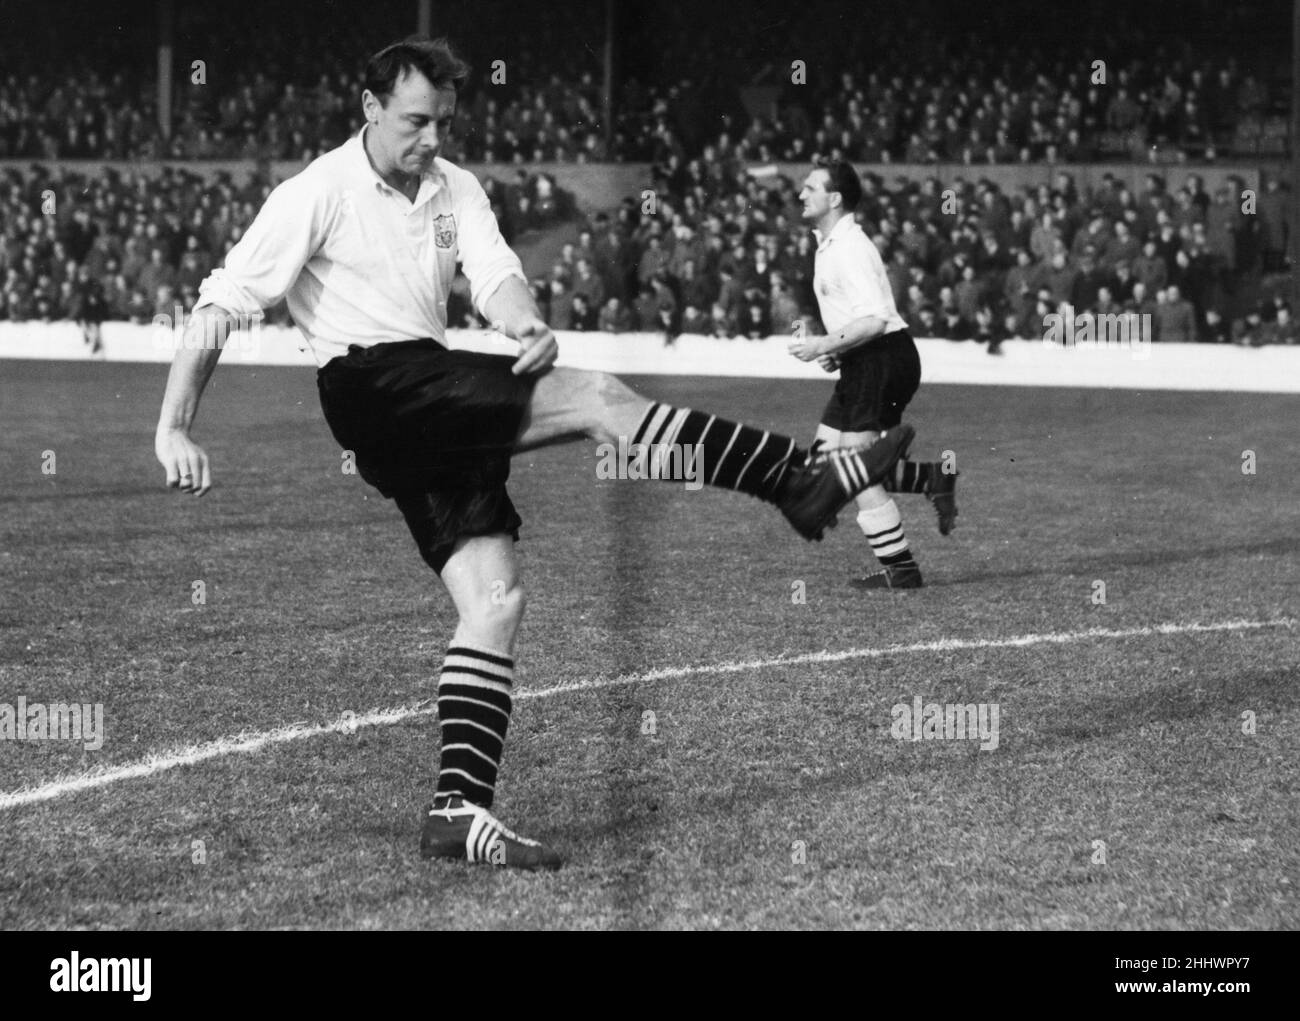 Bedford Jezzard Fulham Fußballspieler, Stürmer, für Fulham Fußballverein 1948-1957.Bild ca. 1955. Stockfoto